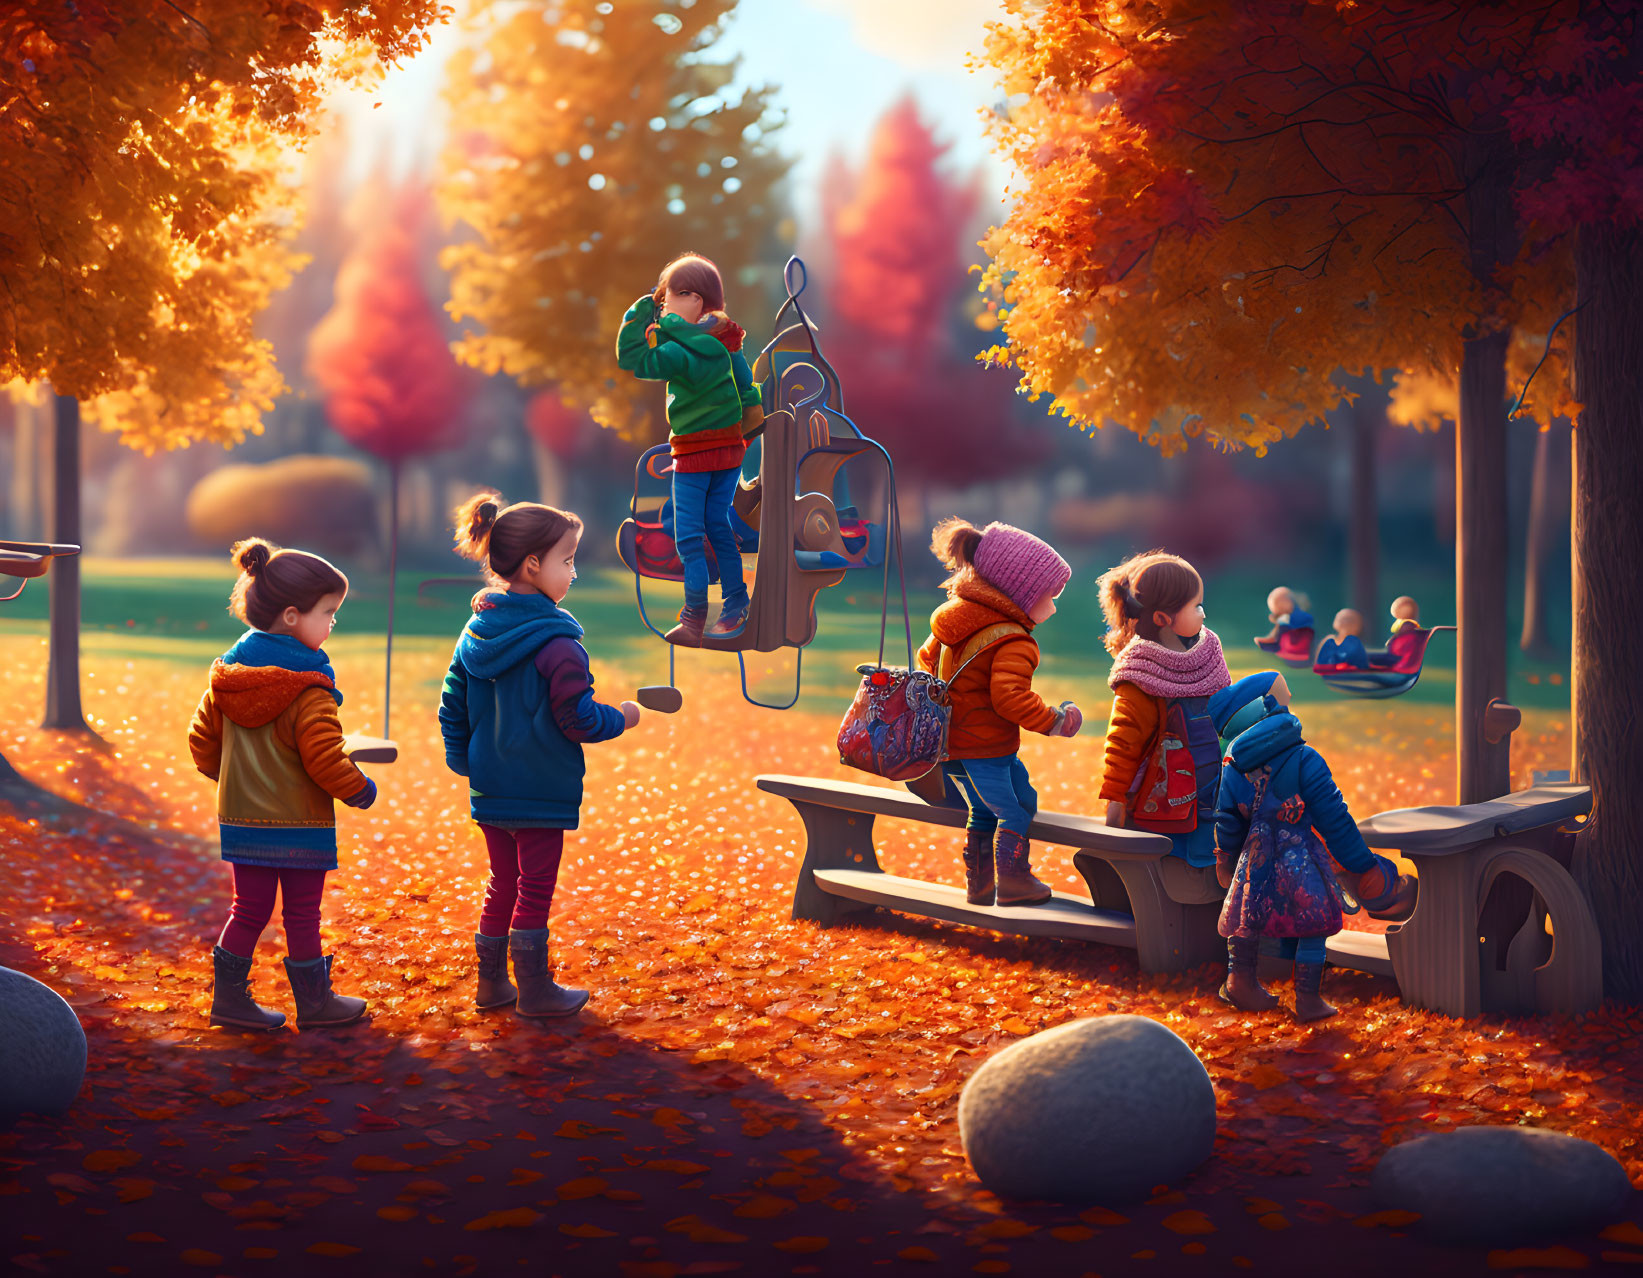 Children playing on slide in vibrant autumn park scene